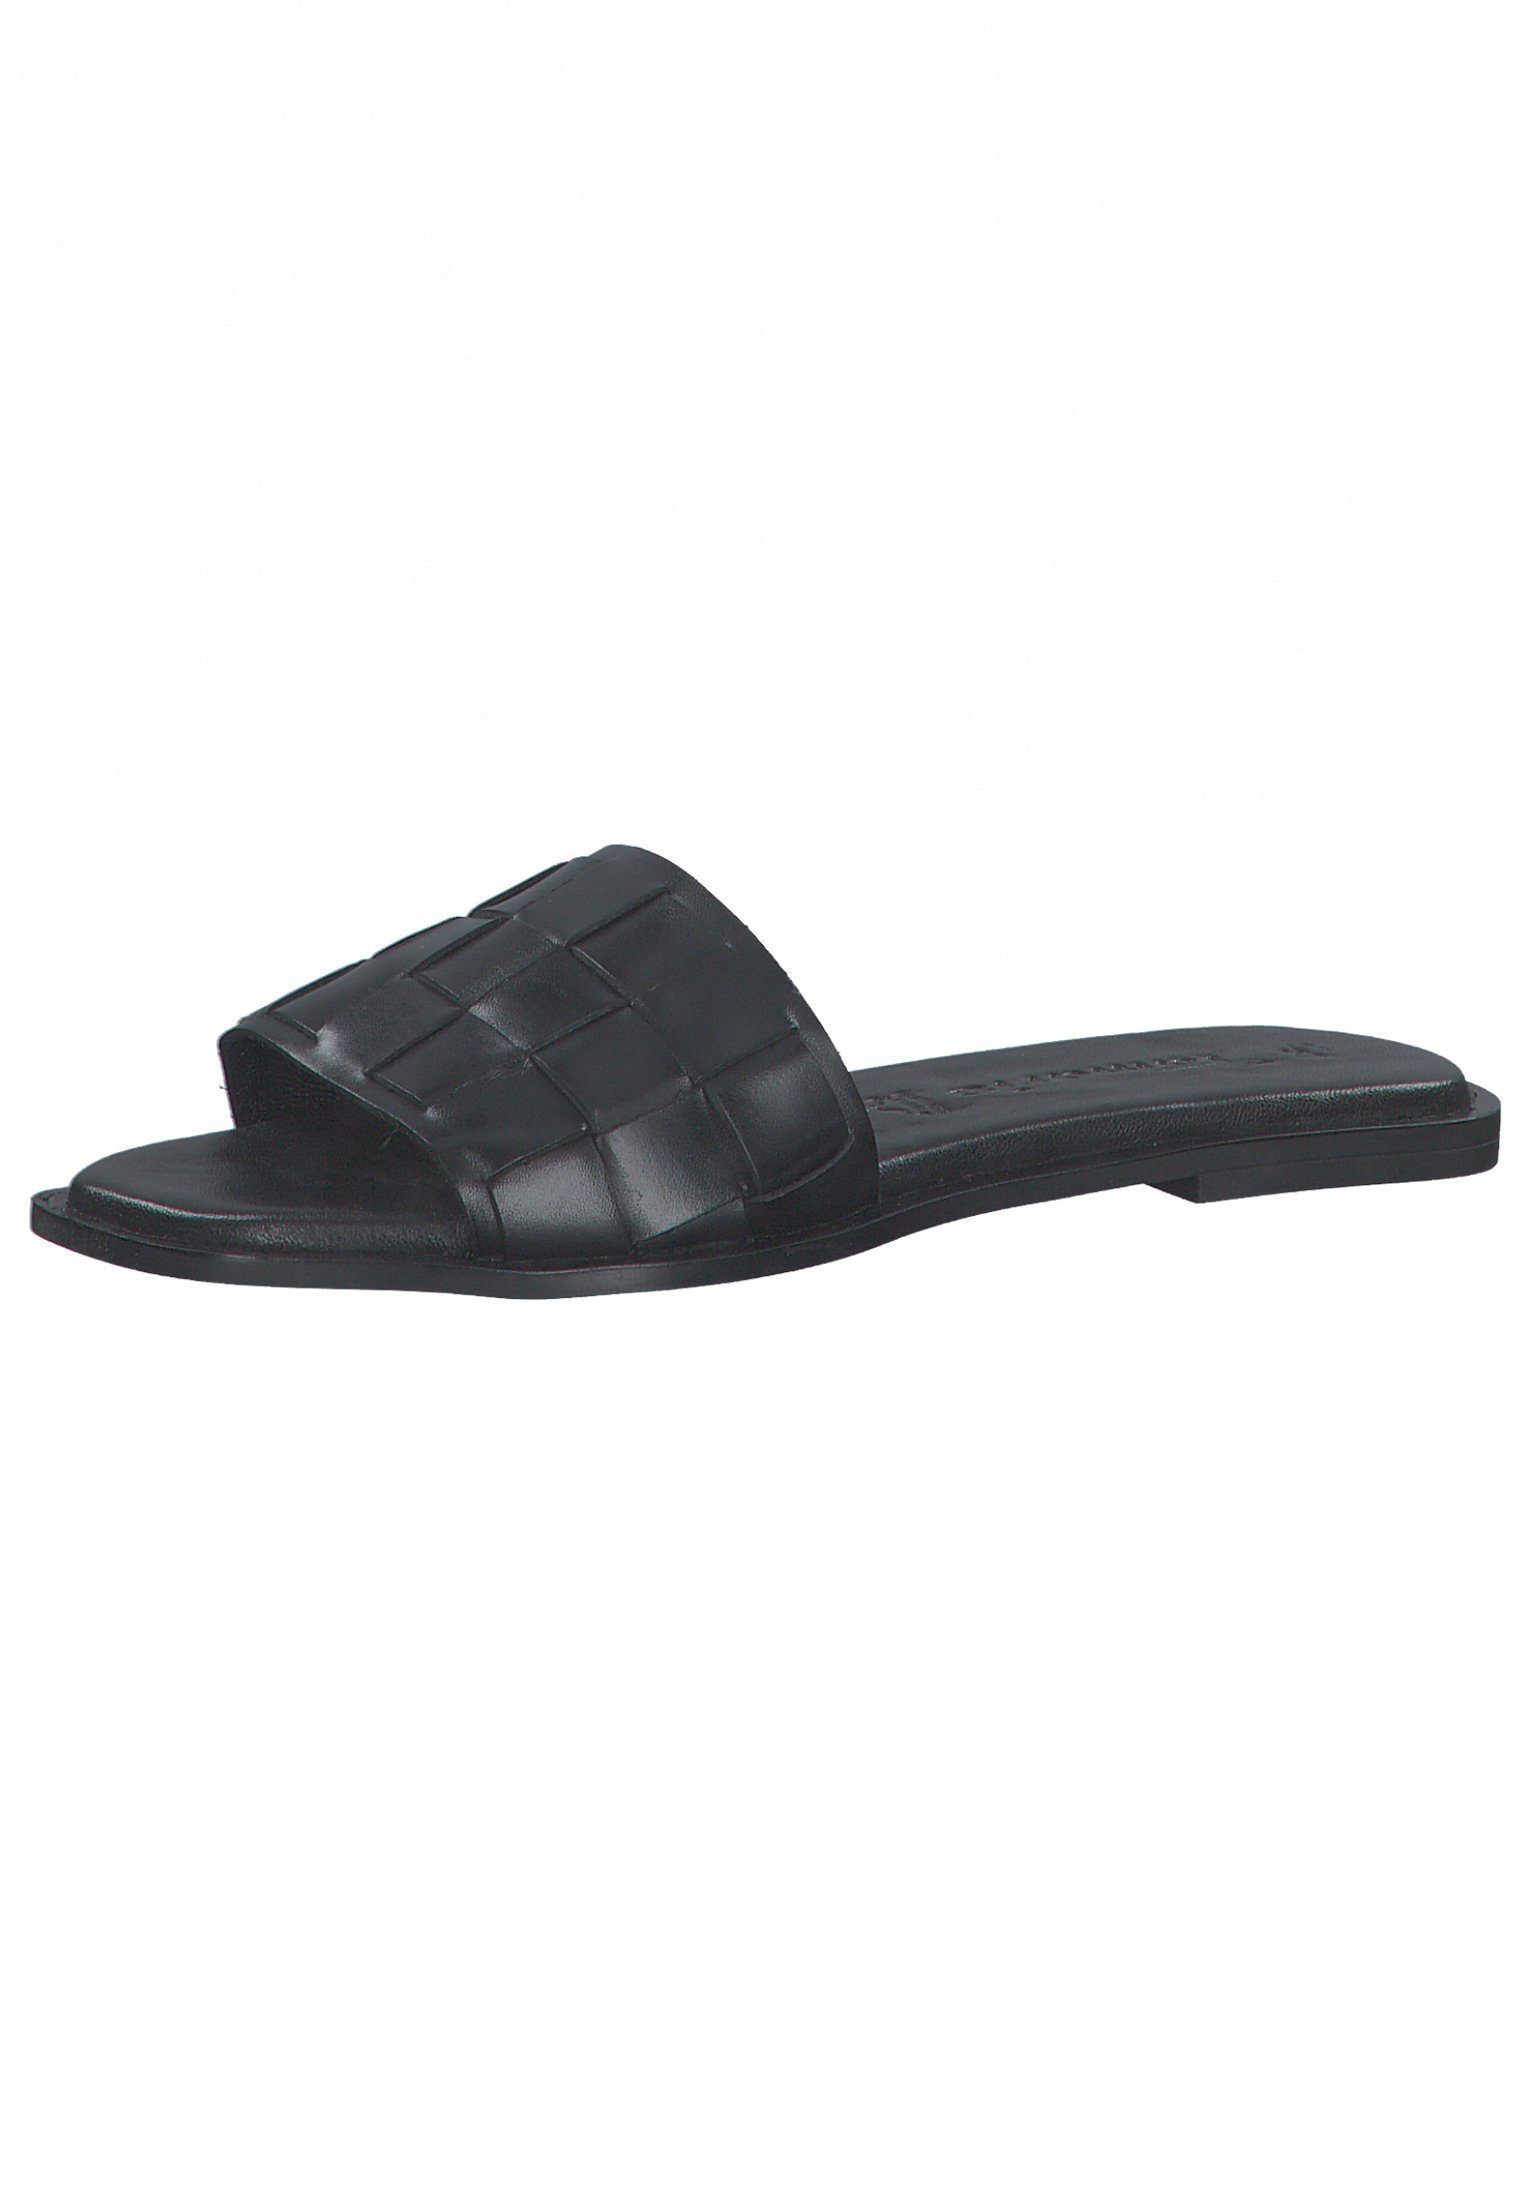 Black Tamaris 003 Sandale 1-27122-28 Leather